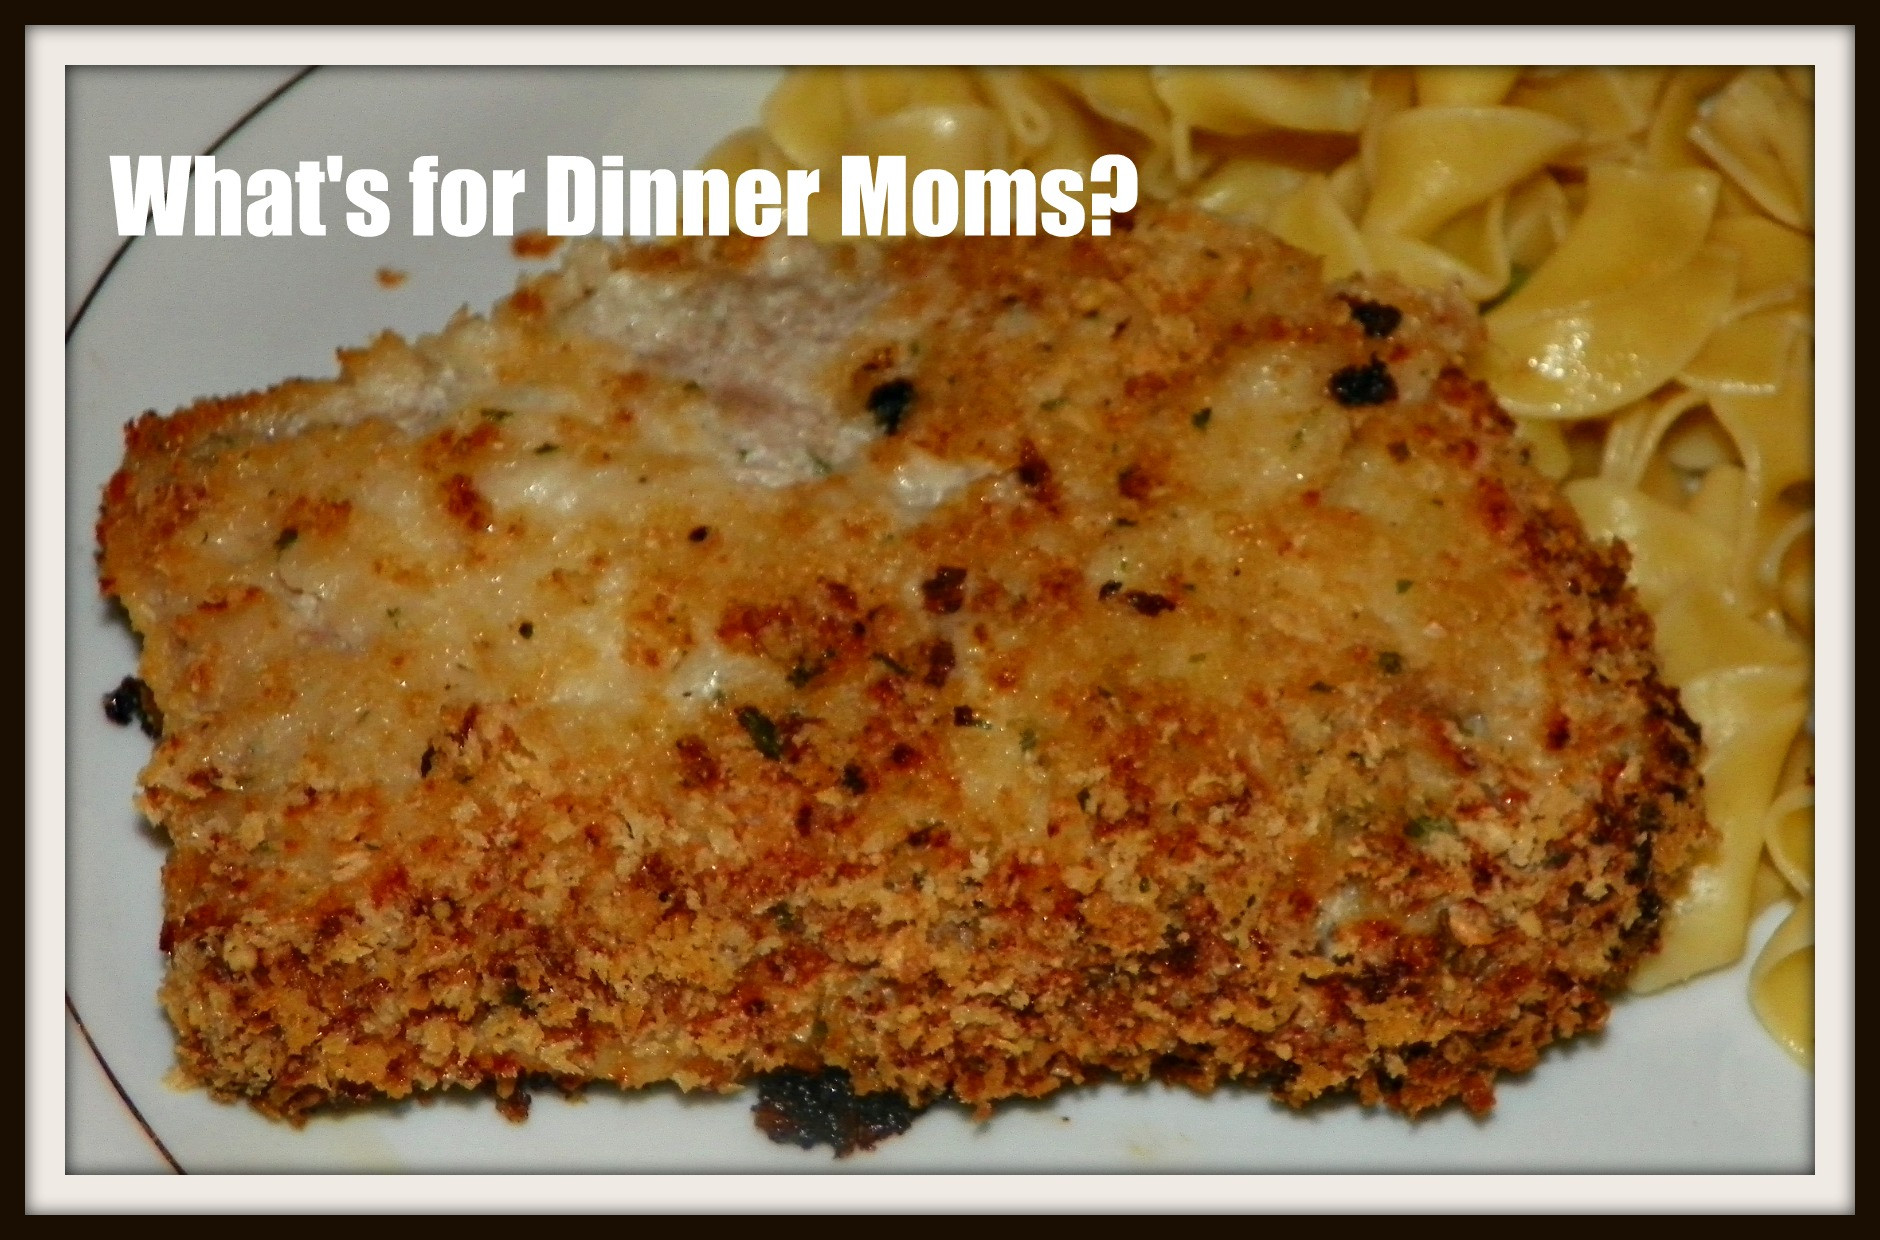 Bake Boneless Pork Chops
 Ranch Baked Boneless Pork Chops – What s for Dinner Moms